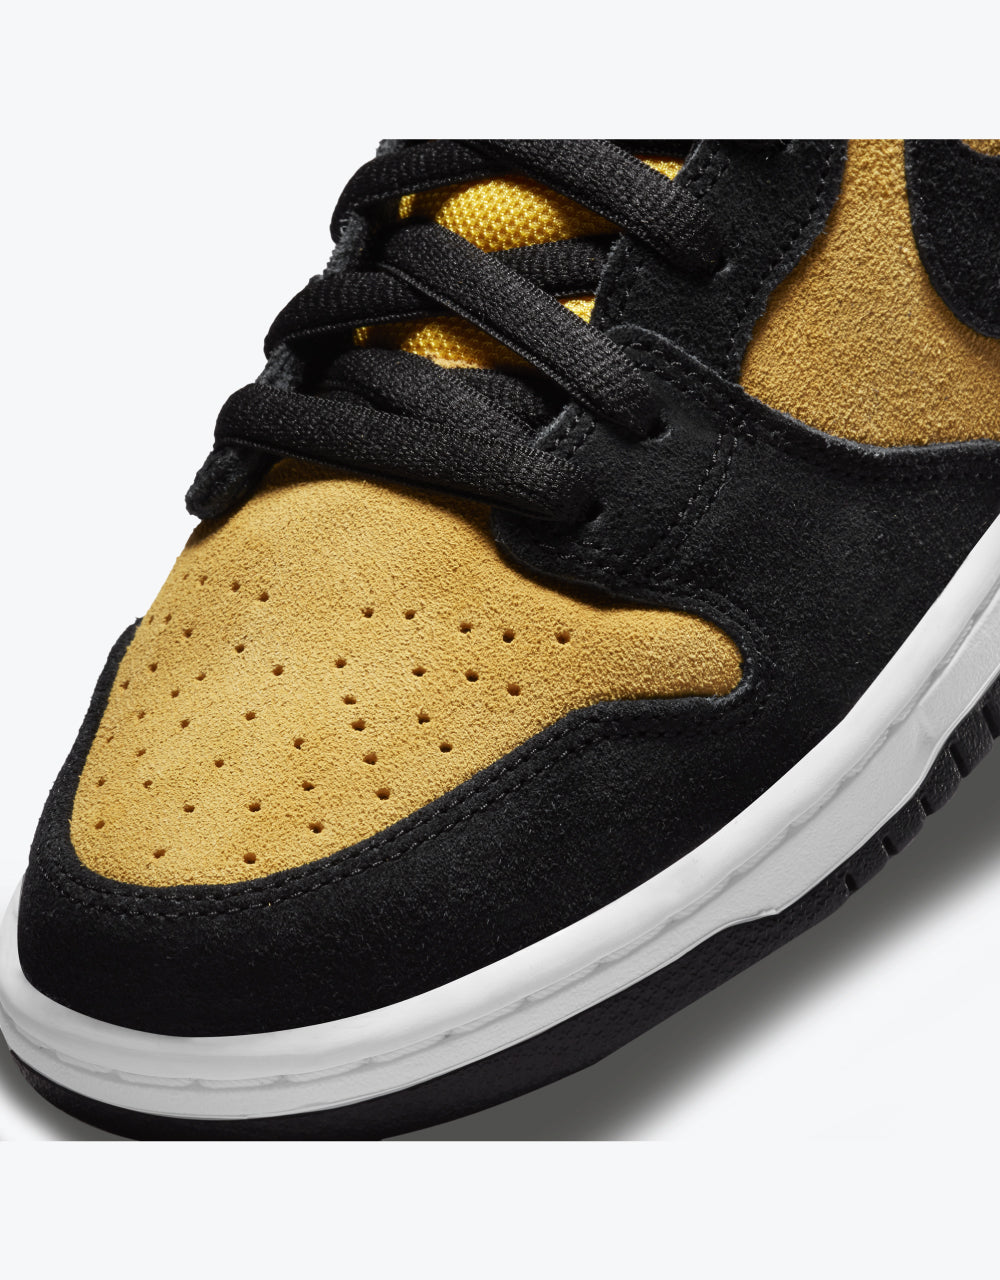 Nike SB 'Reverse Goldenrod' Dunk High Pro Skate Shoes - Black/Black-Varsity Maize-White